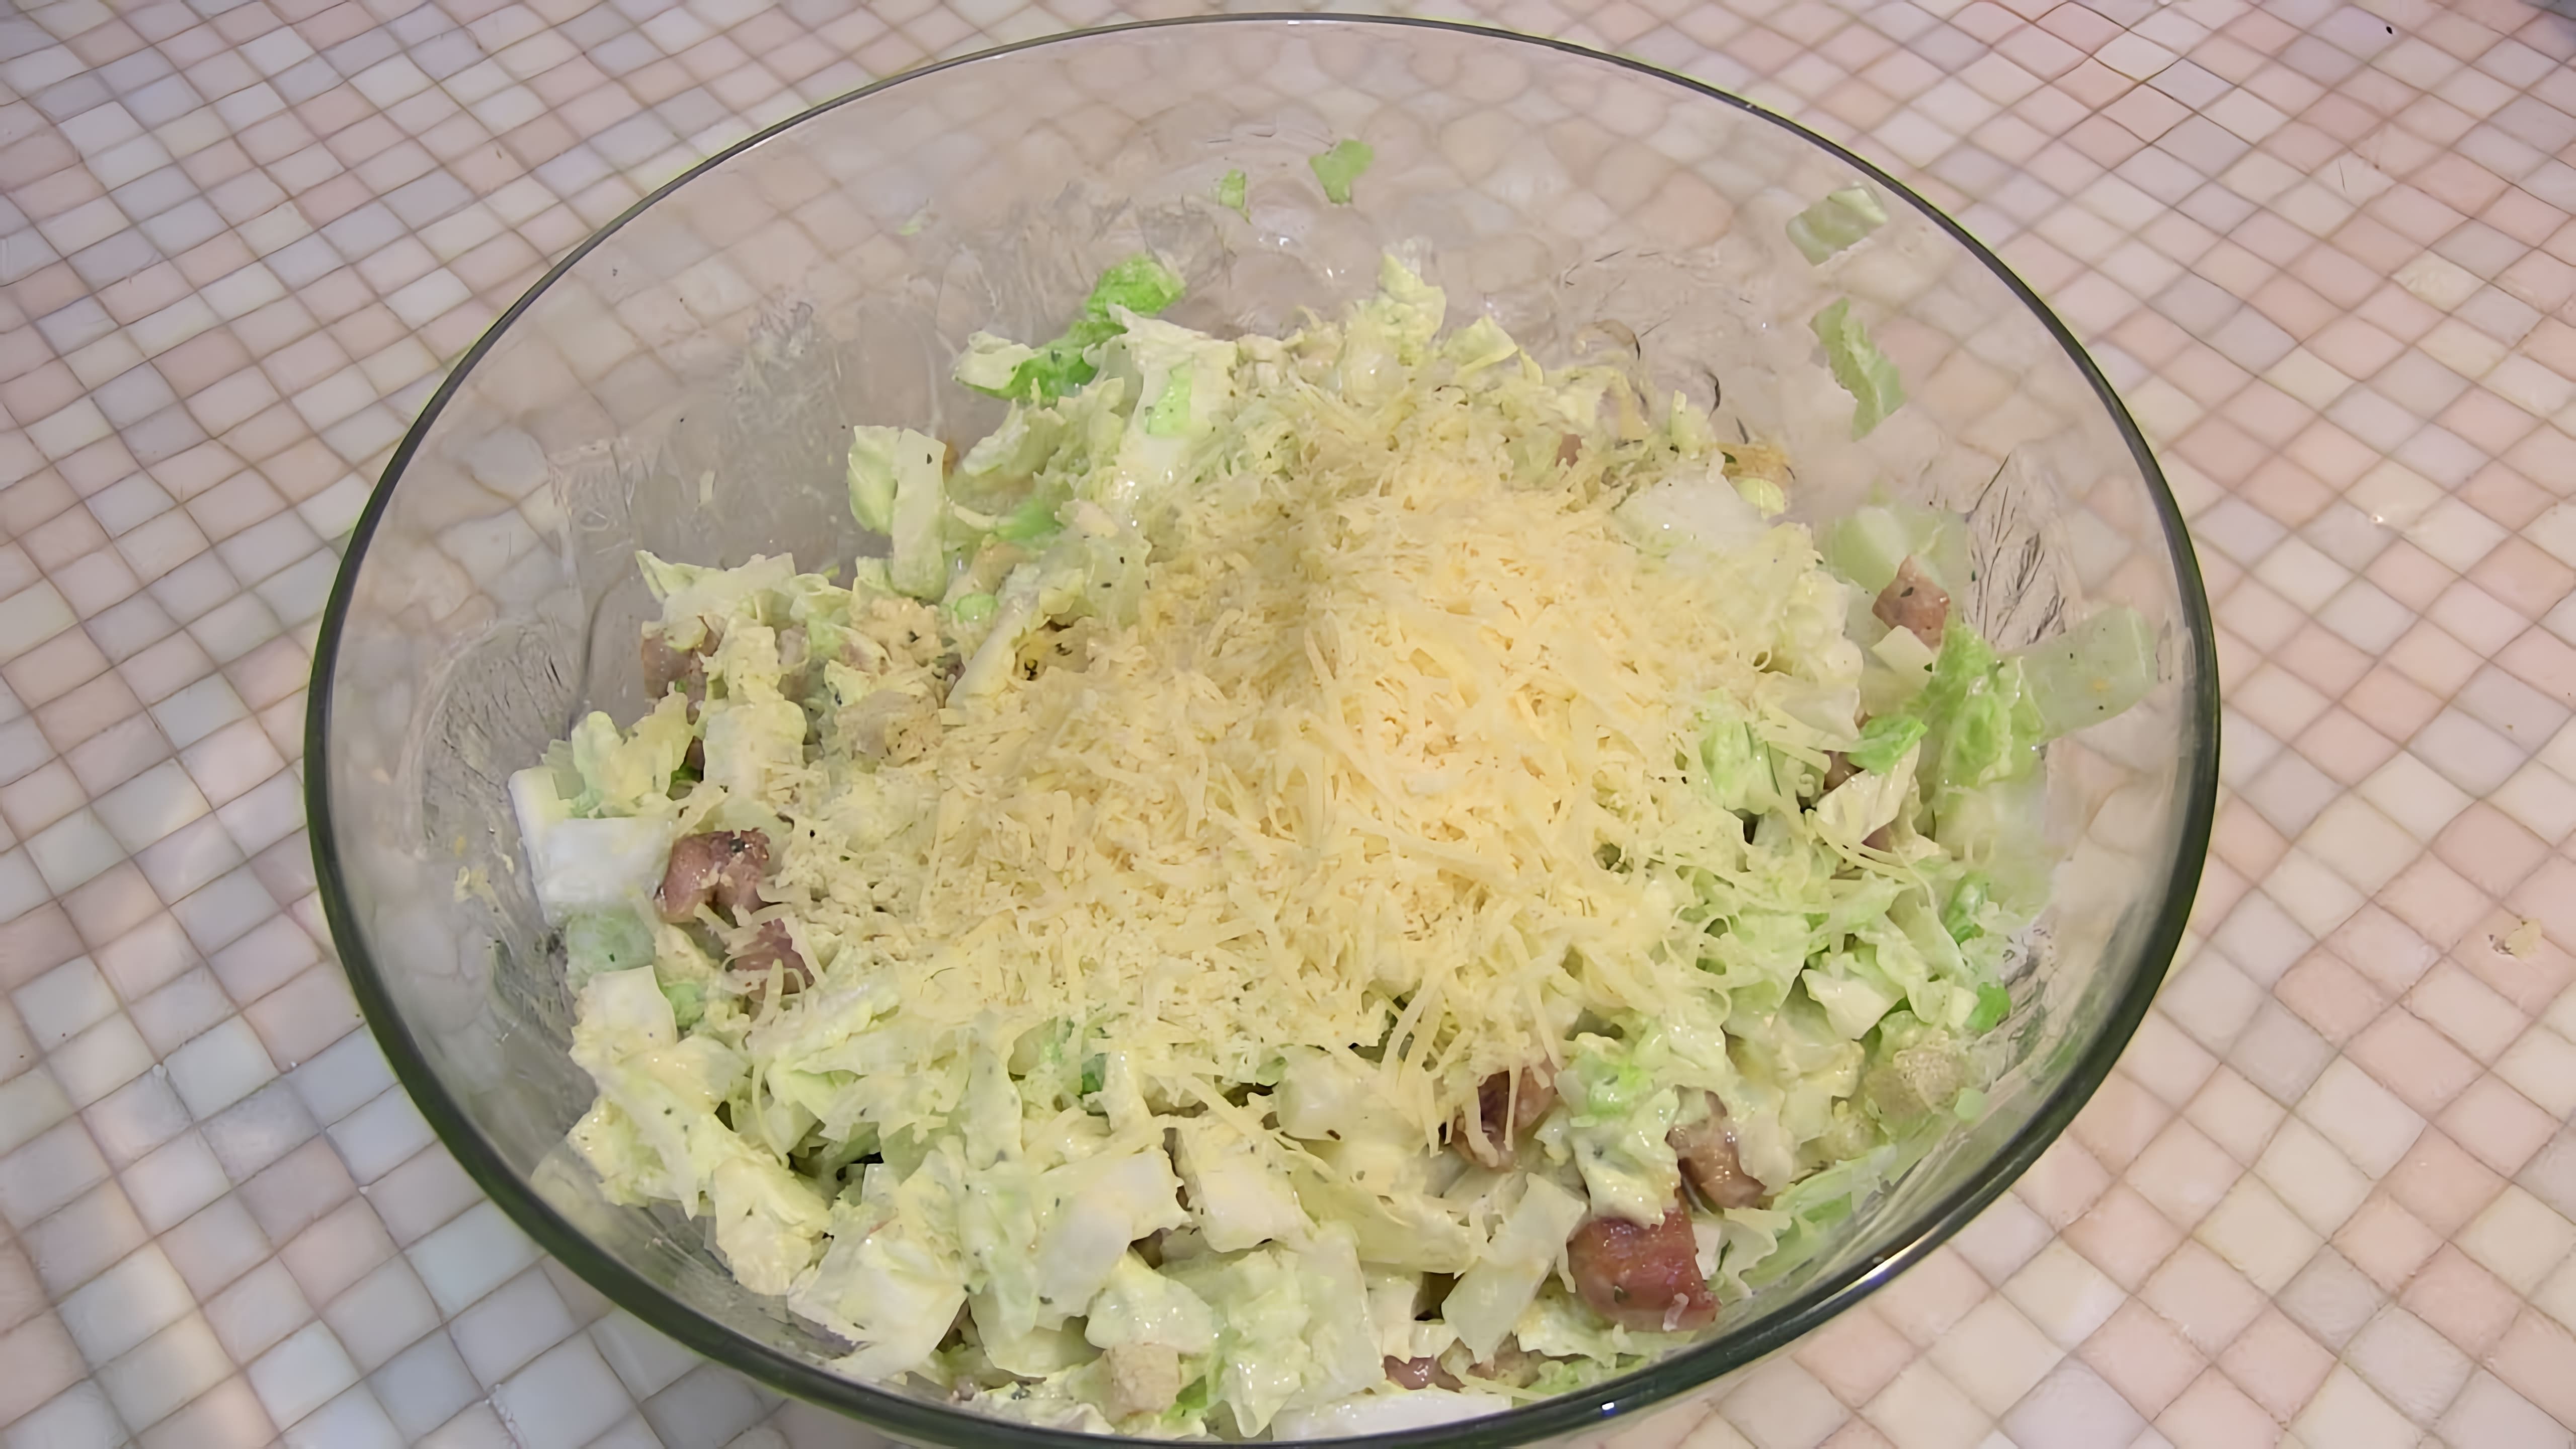 В этом видео демонстрируется процесс приготовления бюджетного варианта салата "Цезарь" на домашней кухне